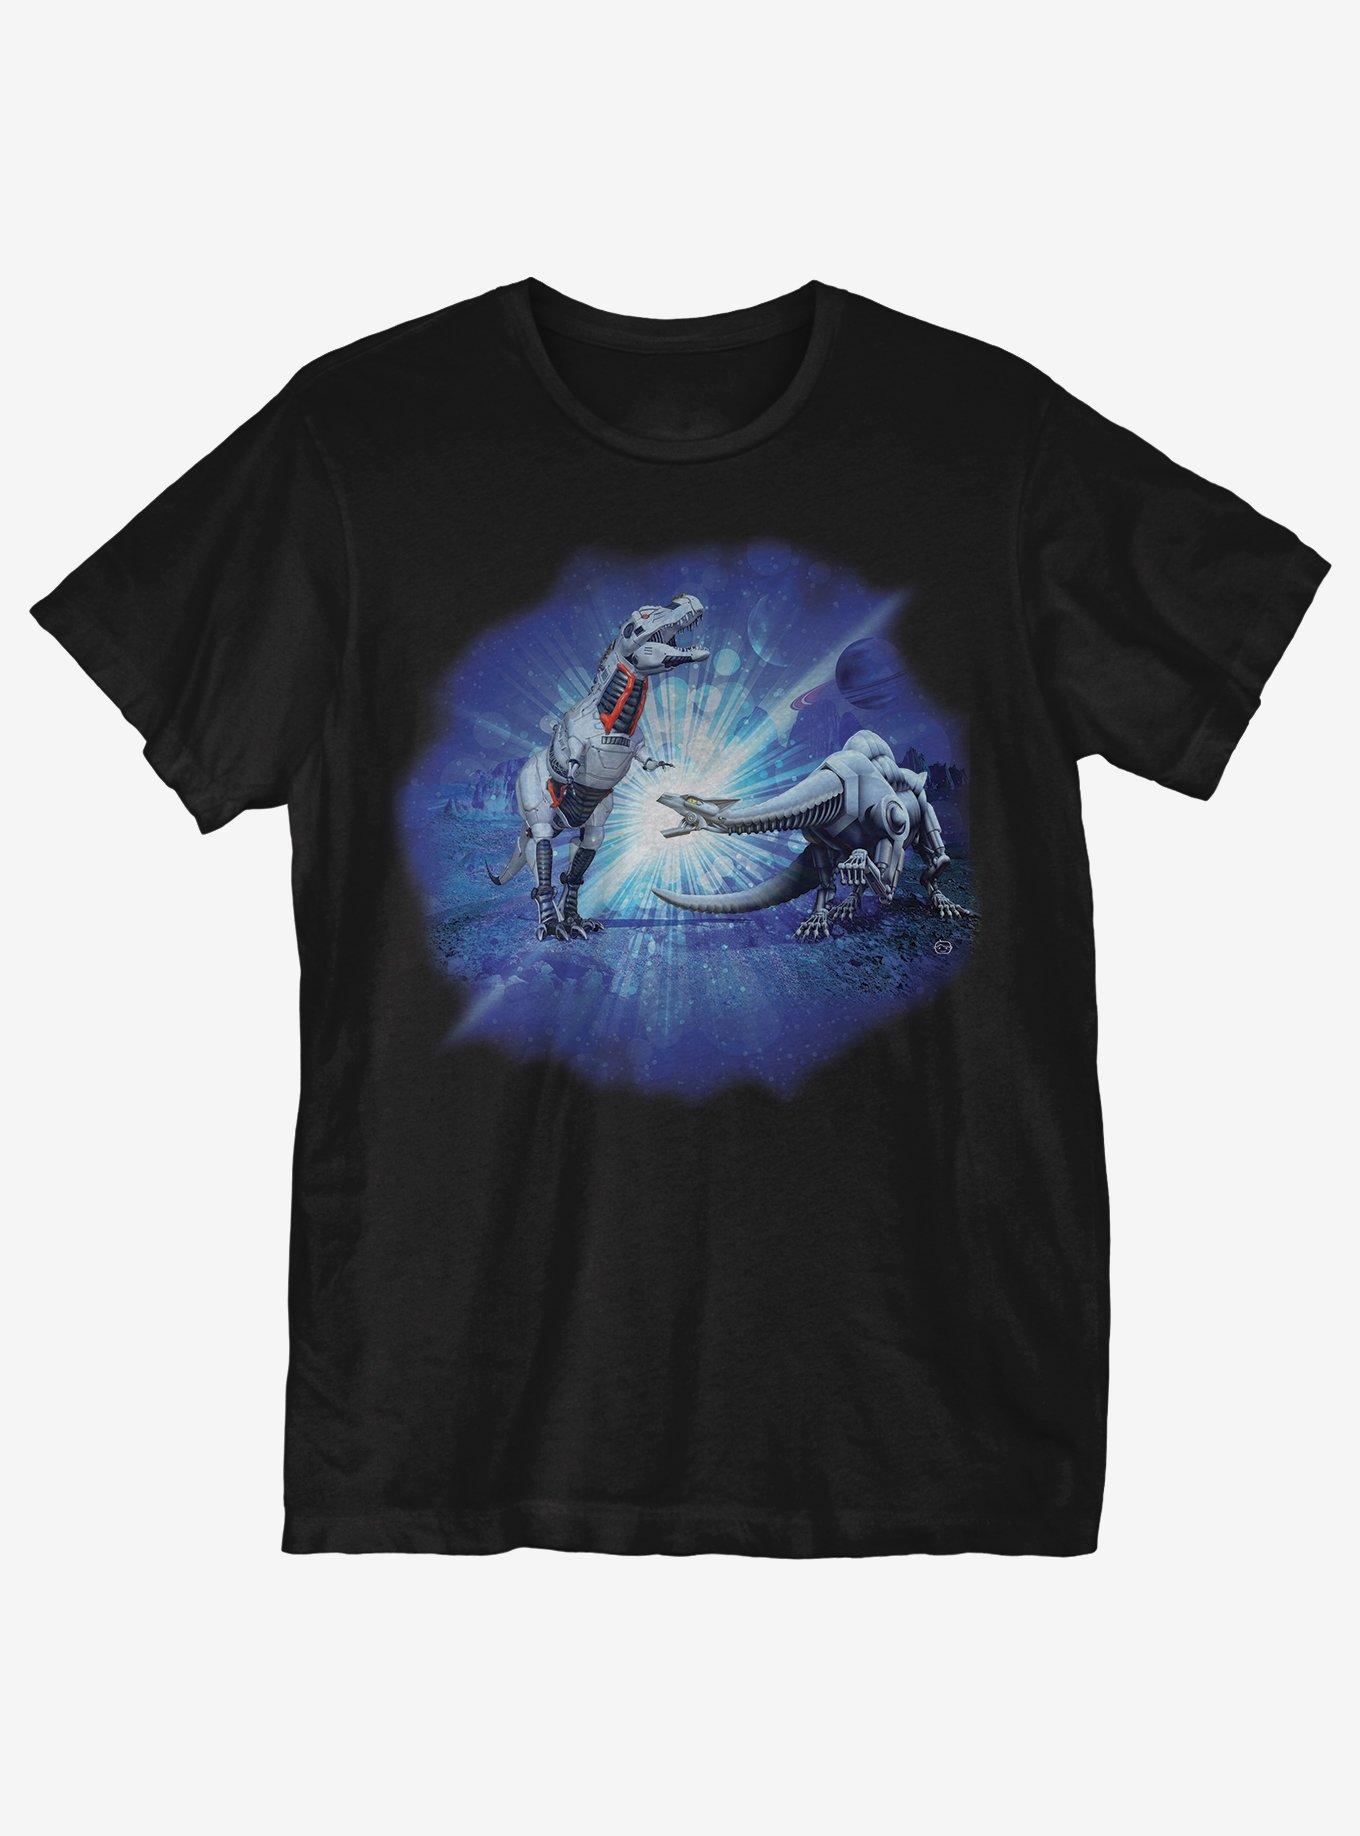 Alien Robot Dinosaurs T-Shirt